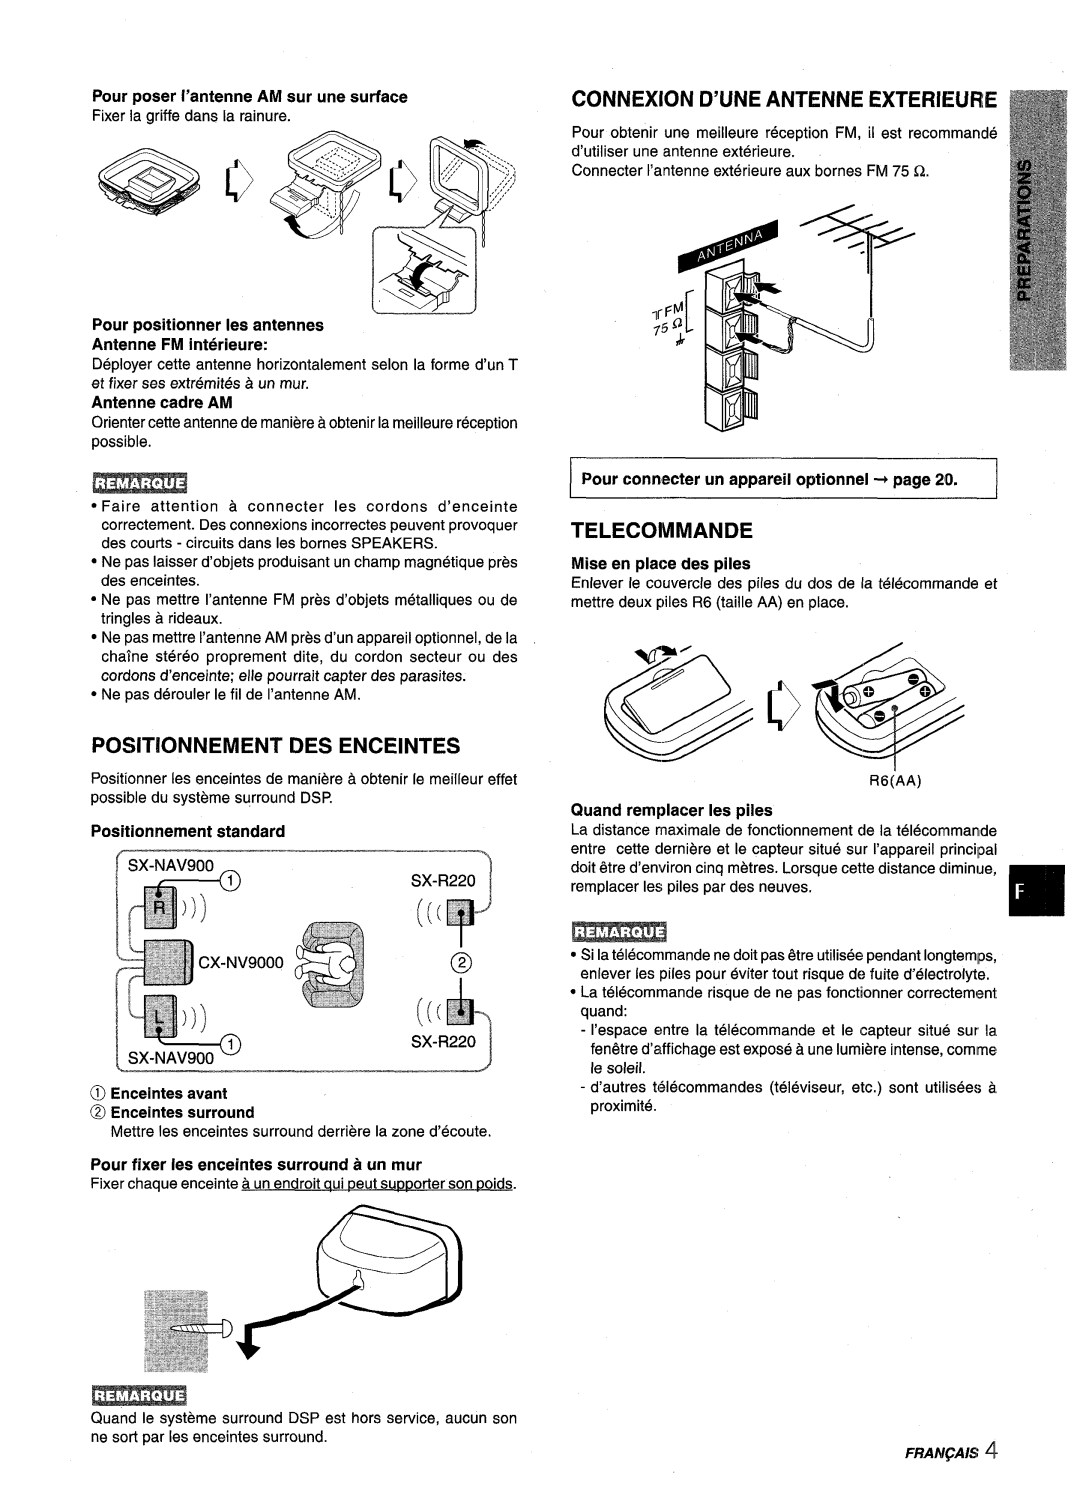 Aiwa NSX-V9000 manual Connexion D’Une Antenne Exterieure, Telecommande, Positionnement Des Enceintes, Antenne cadre AM 